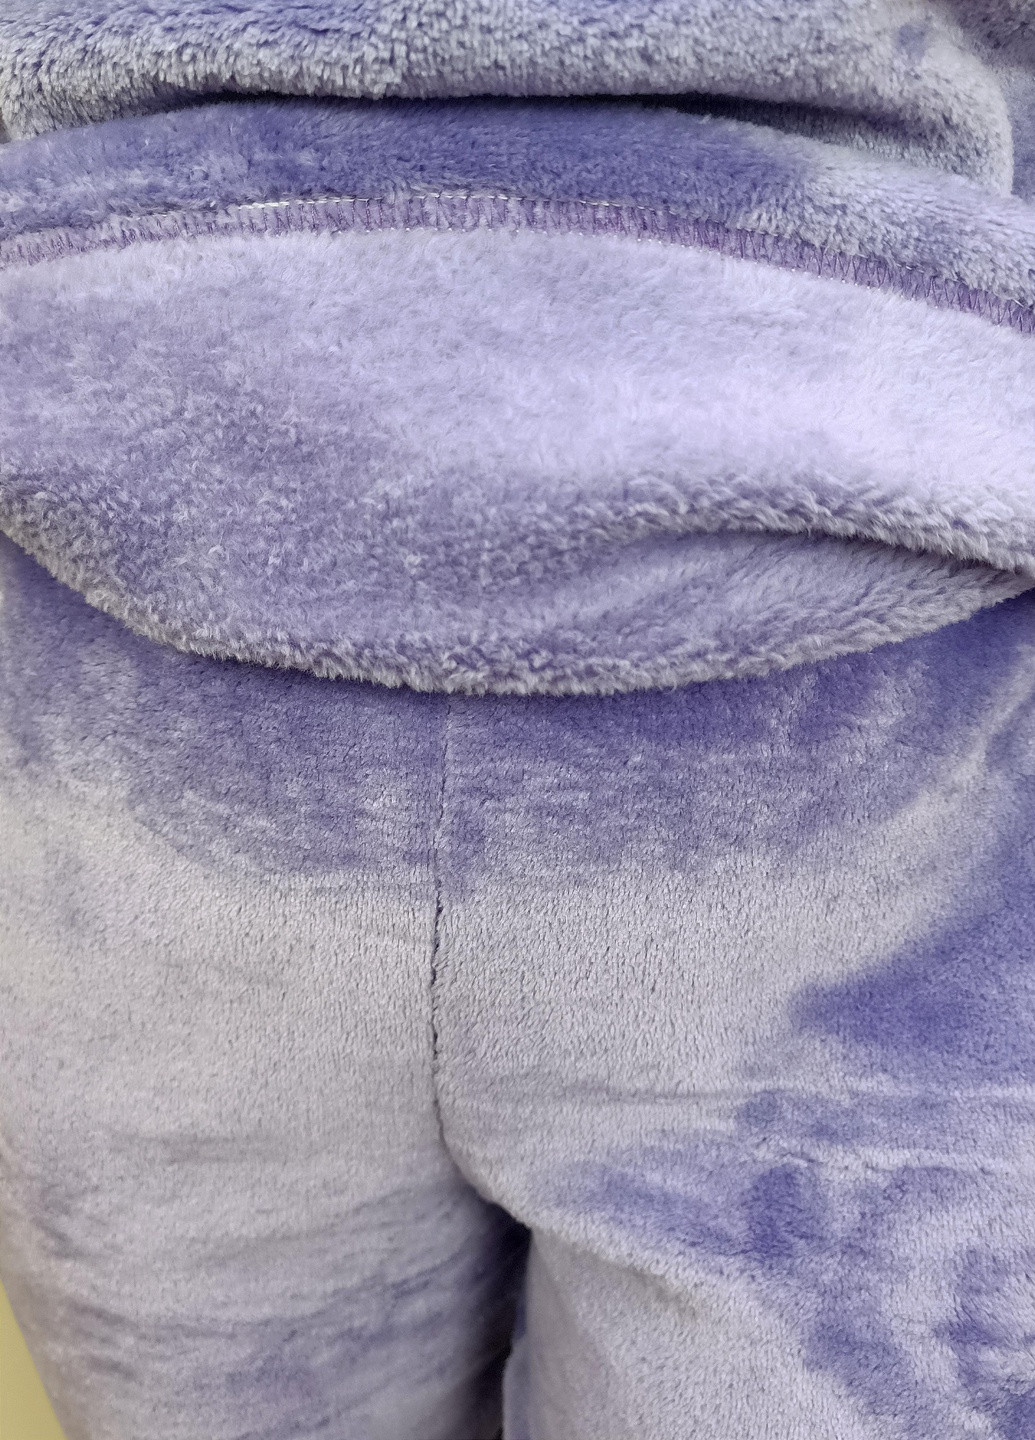 Сиреневая пижама женская violeta теплая 54 сиреневая triko (55162055-6) No Brand